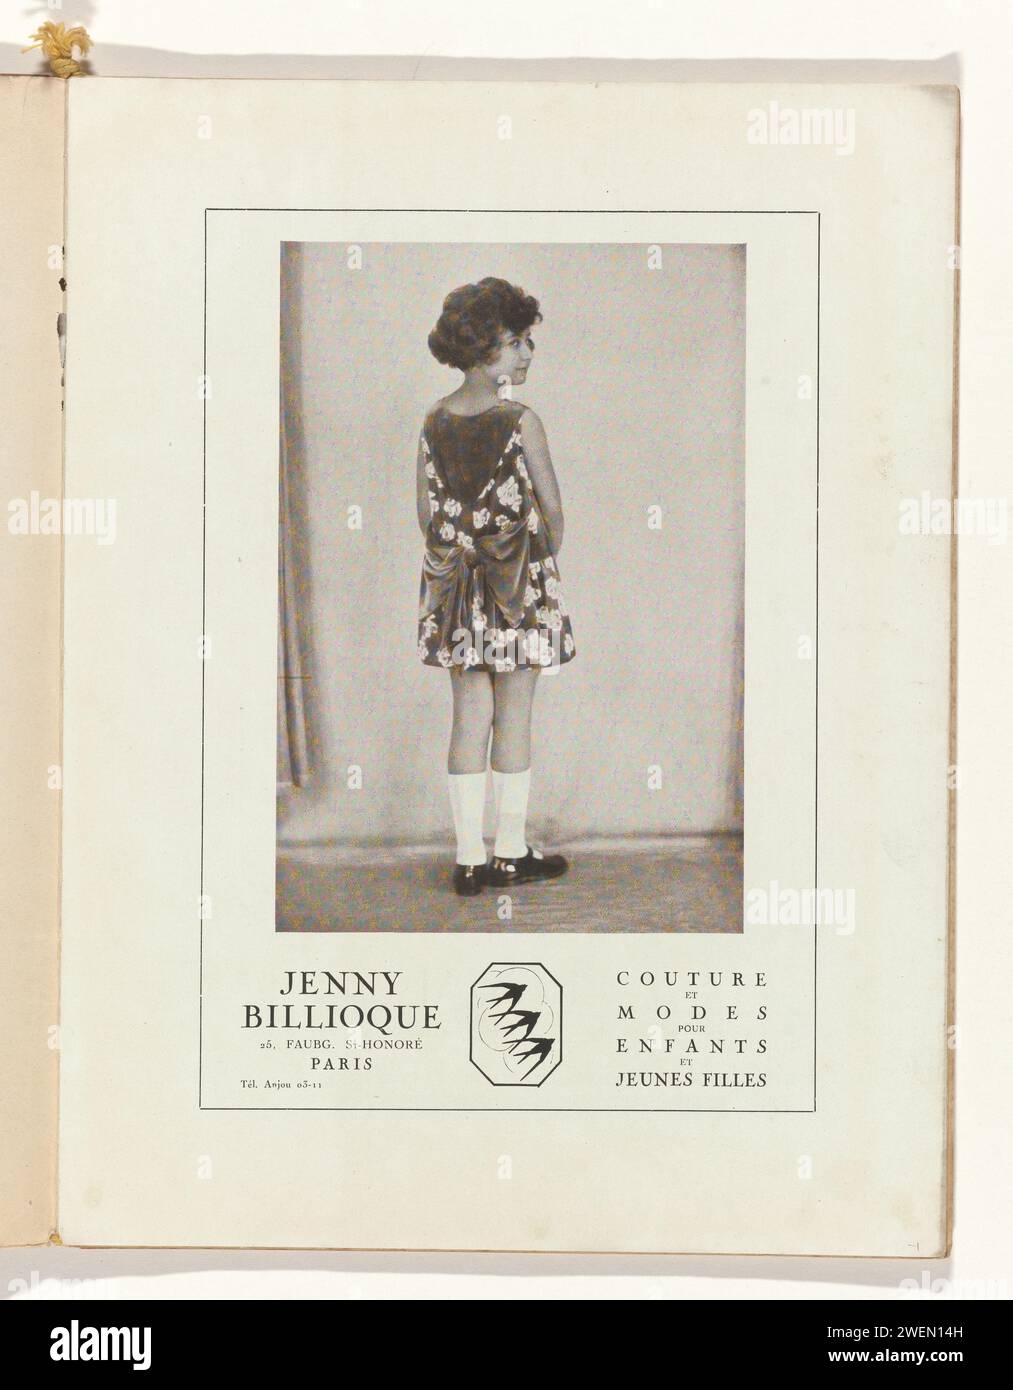 Art - goût - Beauté, feuilles d'élégance féminine, mai 1929, n° 105, 9e année, p. 1, Anonyme, magazine 1929 Publicité de vêtements pour enfants de Jenny Billioque. Fille, vue au dos, dans une robe avec un motif floral. Page du magazine de mode Art-Goût-Beauté (1920-1933). assiettes de mode en papier. robe, robe (+ vêtements pour filles). chaussures, sandales (+ vêtements pour filles). bas, chaussettes (+ vêtements pour filles) Banque D'Images